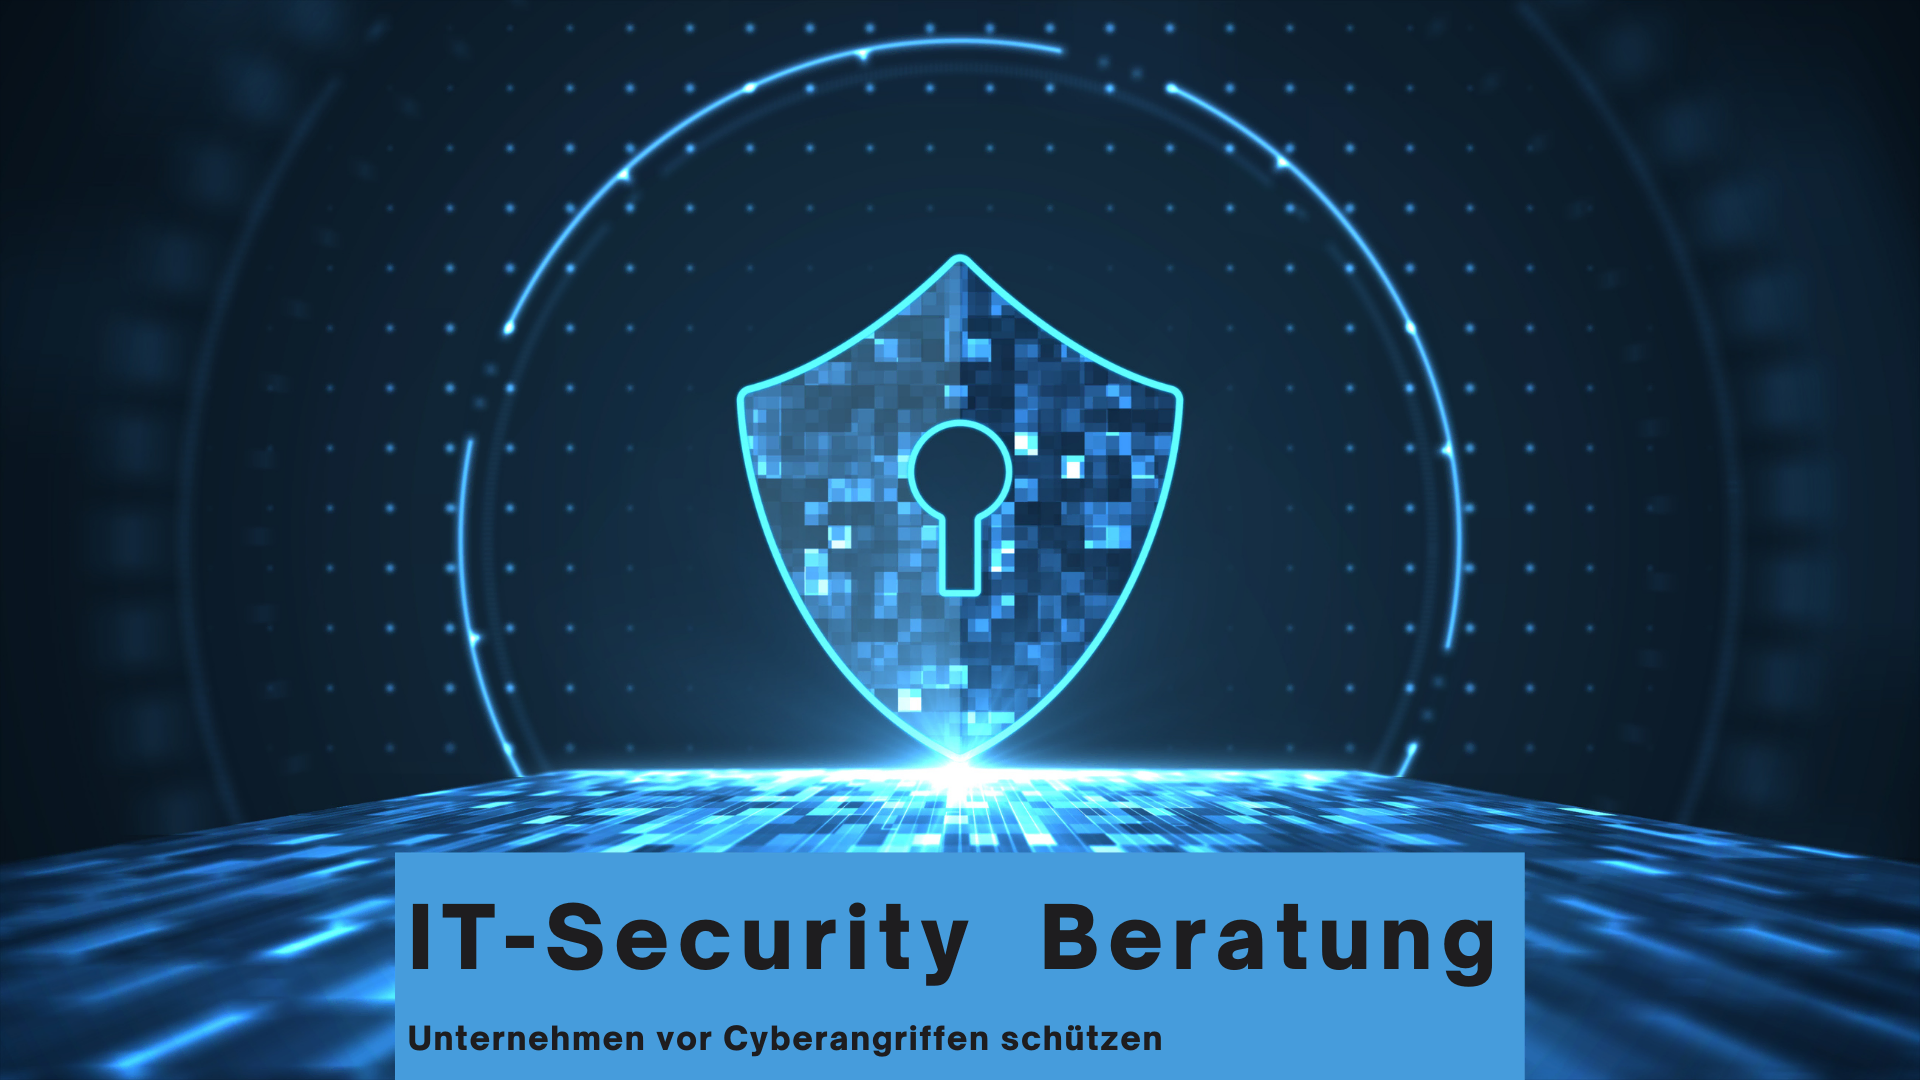 IT-Security Beratung: Unternehmen vor Cyberangriffen schützen